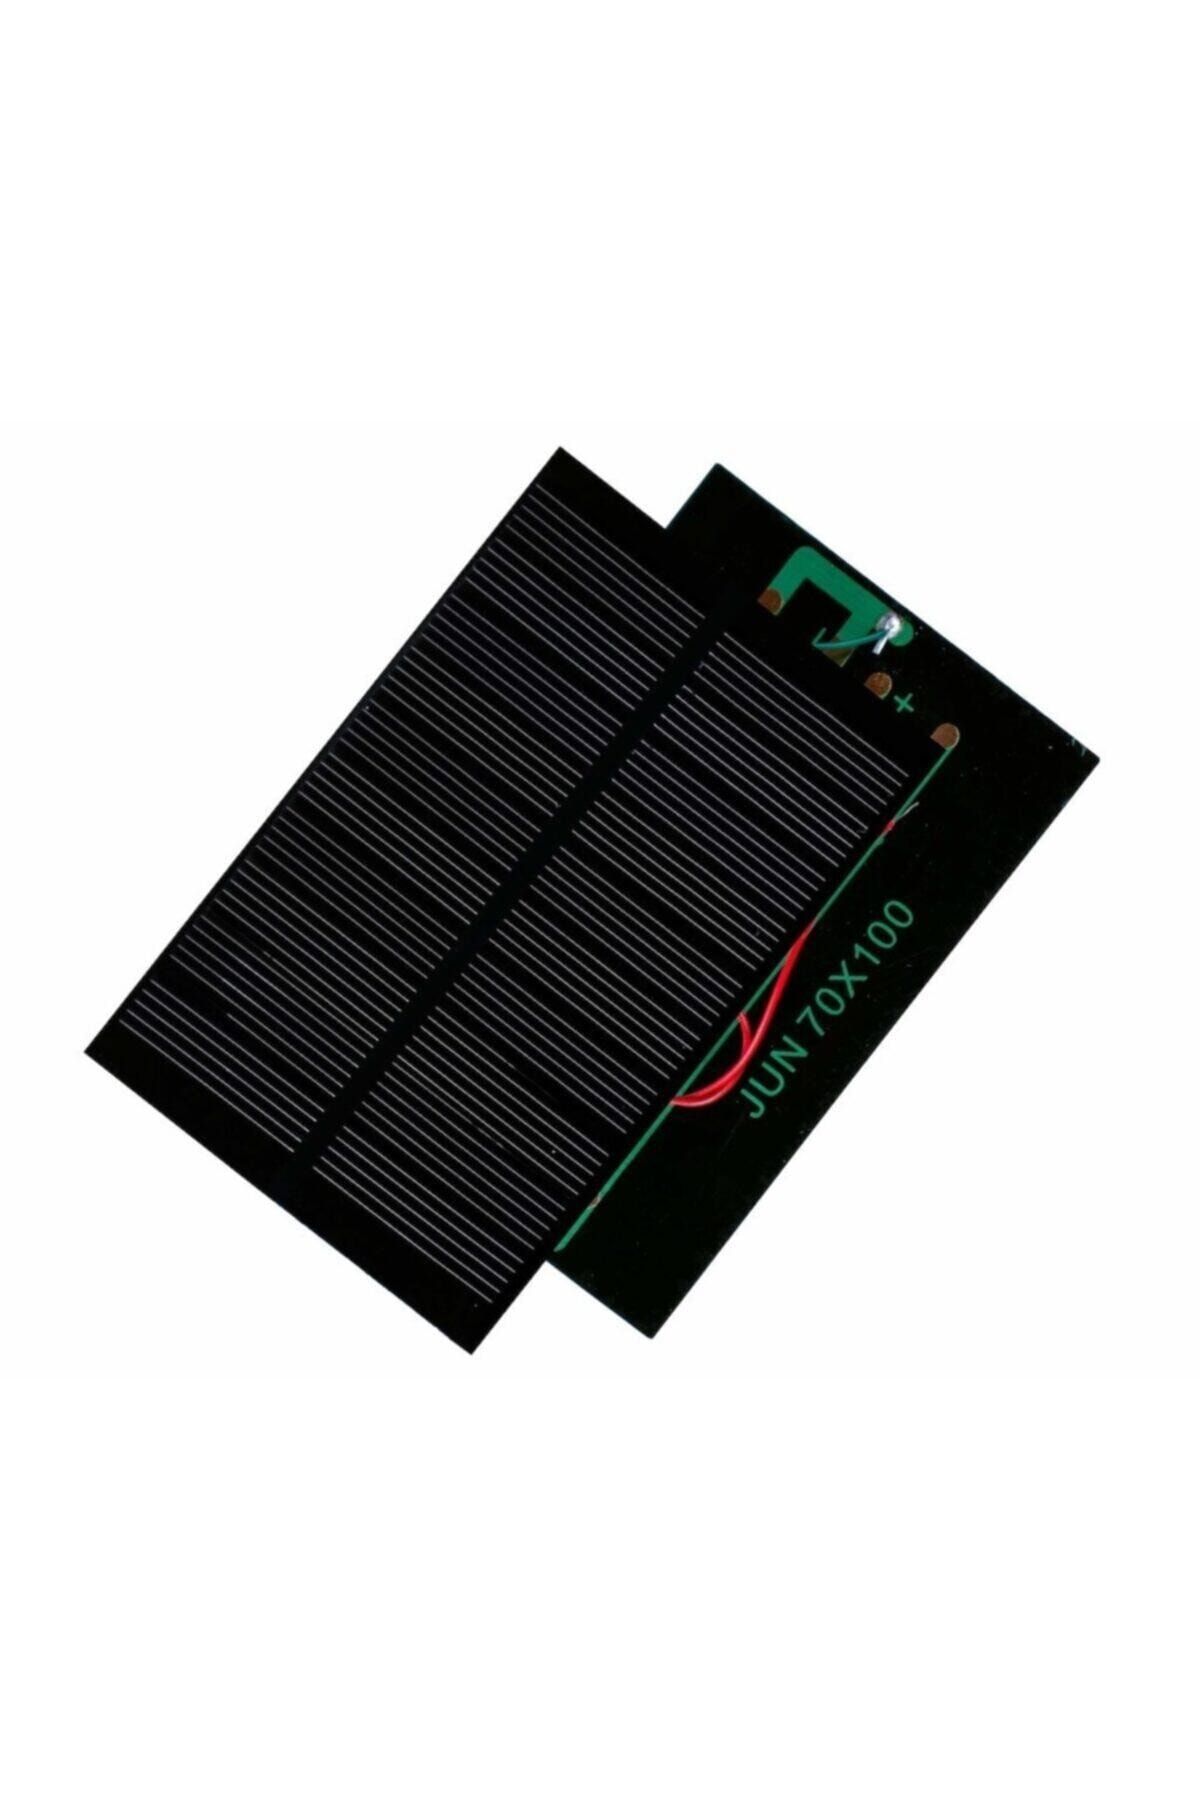 Emay Küçük Mini Güneş Paneli 7cmx10cm 6 Volt 0,15 Amper &#43; Ve - Uç Kablo